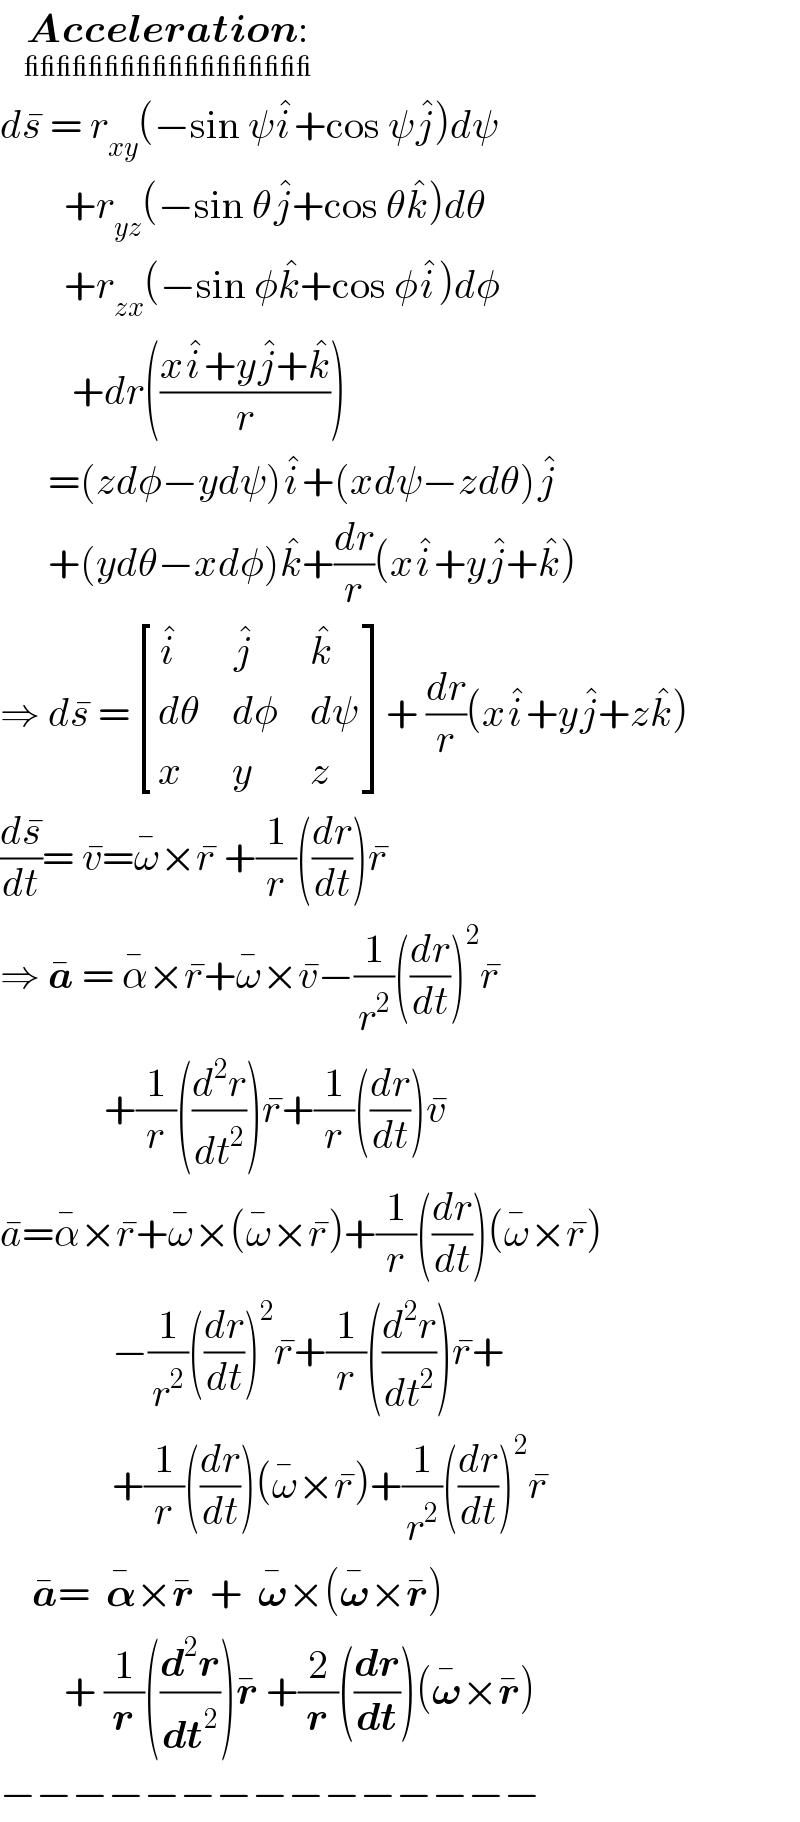    Acceleration:_(__________________)    ds^�  = r_(xy) (−sin ψi^� +cos ψj^� )dψ          +r_(yz) (−sin θj^� +cos θk^� )dθ          +r_(zx) (−sin φk^� +cos φi^� )dφ           +dr(((xi^� +yj^� +k^� )/r))        =(zdφ−ydψ)i^� +(xdψ−zdθ)j^�         +(ydθ−xdφ)k^� +(dr/r)(xi^� +yj^� +k^� )  ⇒ ds^�  = [(i^� ,j^� ,k^� ),(dθ,dφ,dψ),(x,y,z) ]+ (dr/r)(xi^� +yj^� +zk^� )  (ds^� /dt)= v^� =ω^� ×r^�  +(1/r)((dr/dt))r^�   ⇒ a^�  = α^� ×r^� +ω^� ×v^� −(1/r^2 )((dr/dt))^2 r^�                +(1/r)((d^2 r/dt^2 ))r^� +(1/r)((dr/dt))v^�   a^� =α^� ×r^� +ω^� ×(ω^� ×r^� )+(1/r)((dr/dt))(ω^� ×r^� )                −(1/r^2 )((dr/dt))^2 r^� +(1/r)((d^2 r/dt^2 ))r^� +                +(1/r)((dr/dt))(ω^� ×r^� )+(1/r^2 )((dr/dt))^2 r^�       a^� =  𝛂^� ×r^�   +  𝛚^� ×(𝛚^� ×r^� )          + (1/r)((d^2 r/dt^2 ))r^�  +(2/r)((dr/dt))(𝛚^� ×r^� )  −−−−−−−−−−−−−−−  